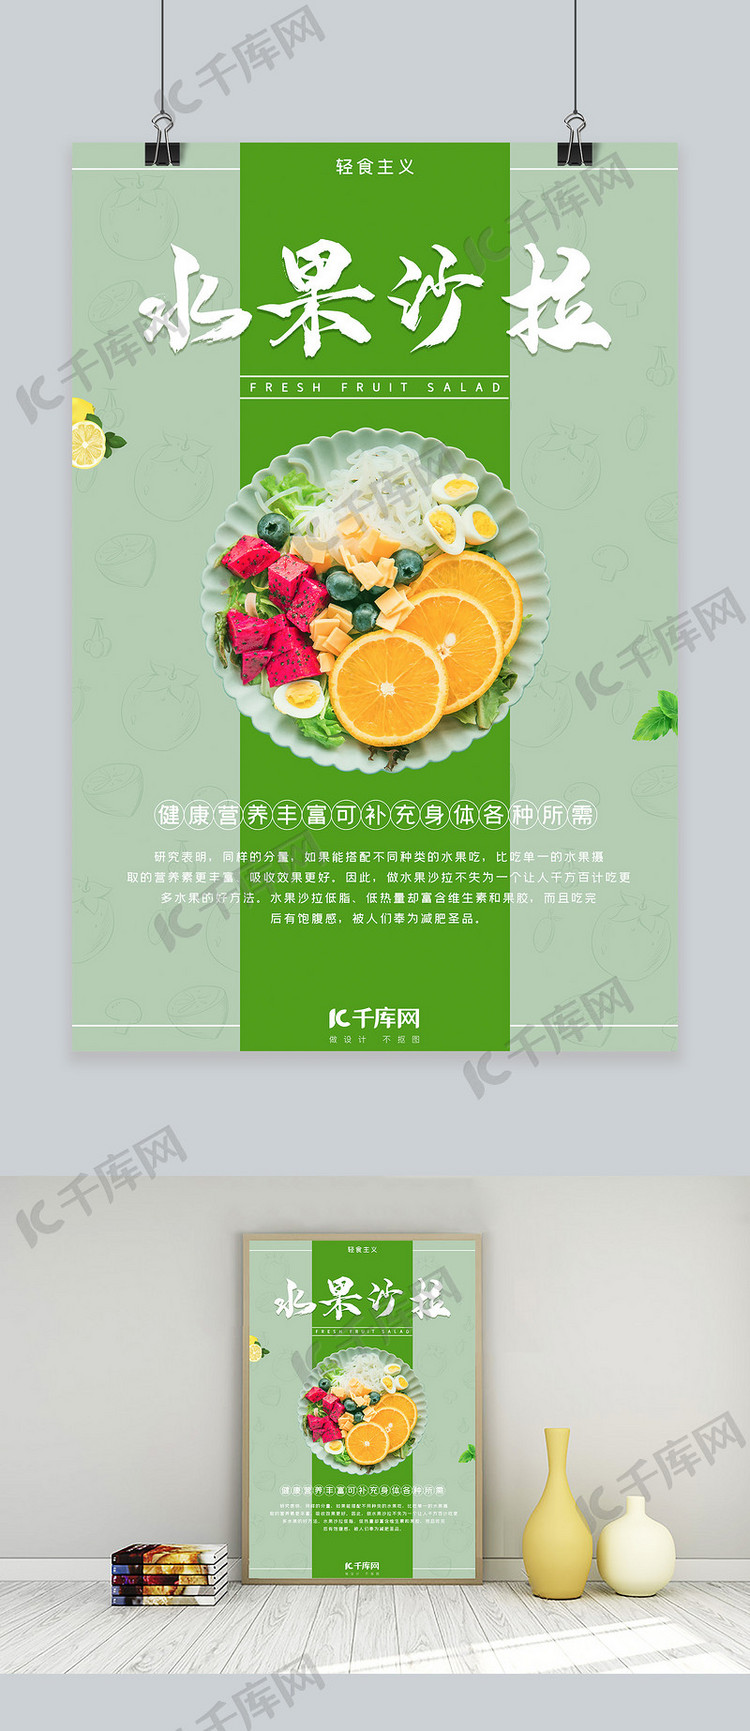 千库原创水果沙拉绿色轻食主义宣传海报